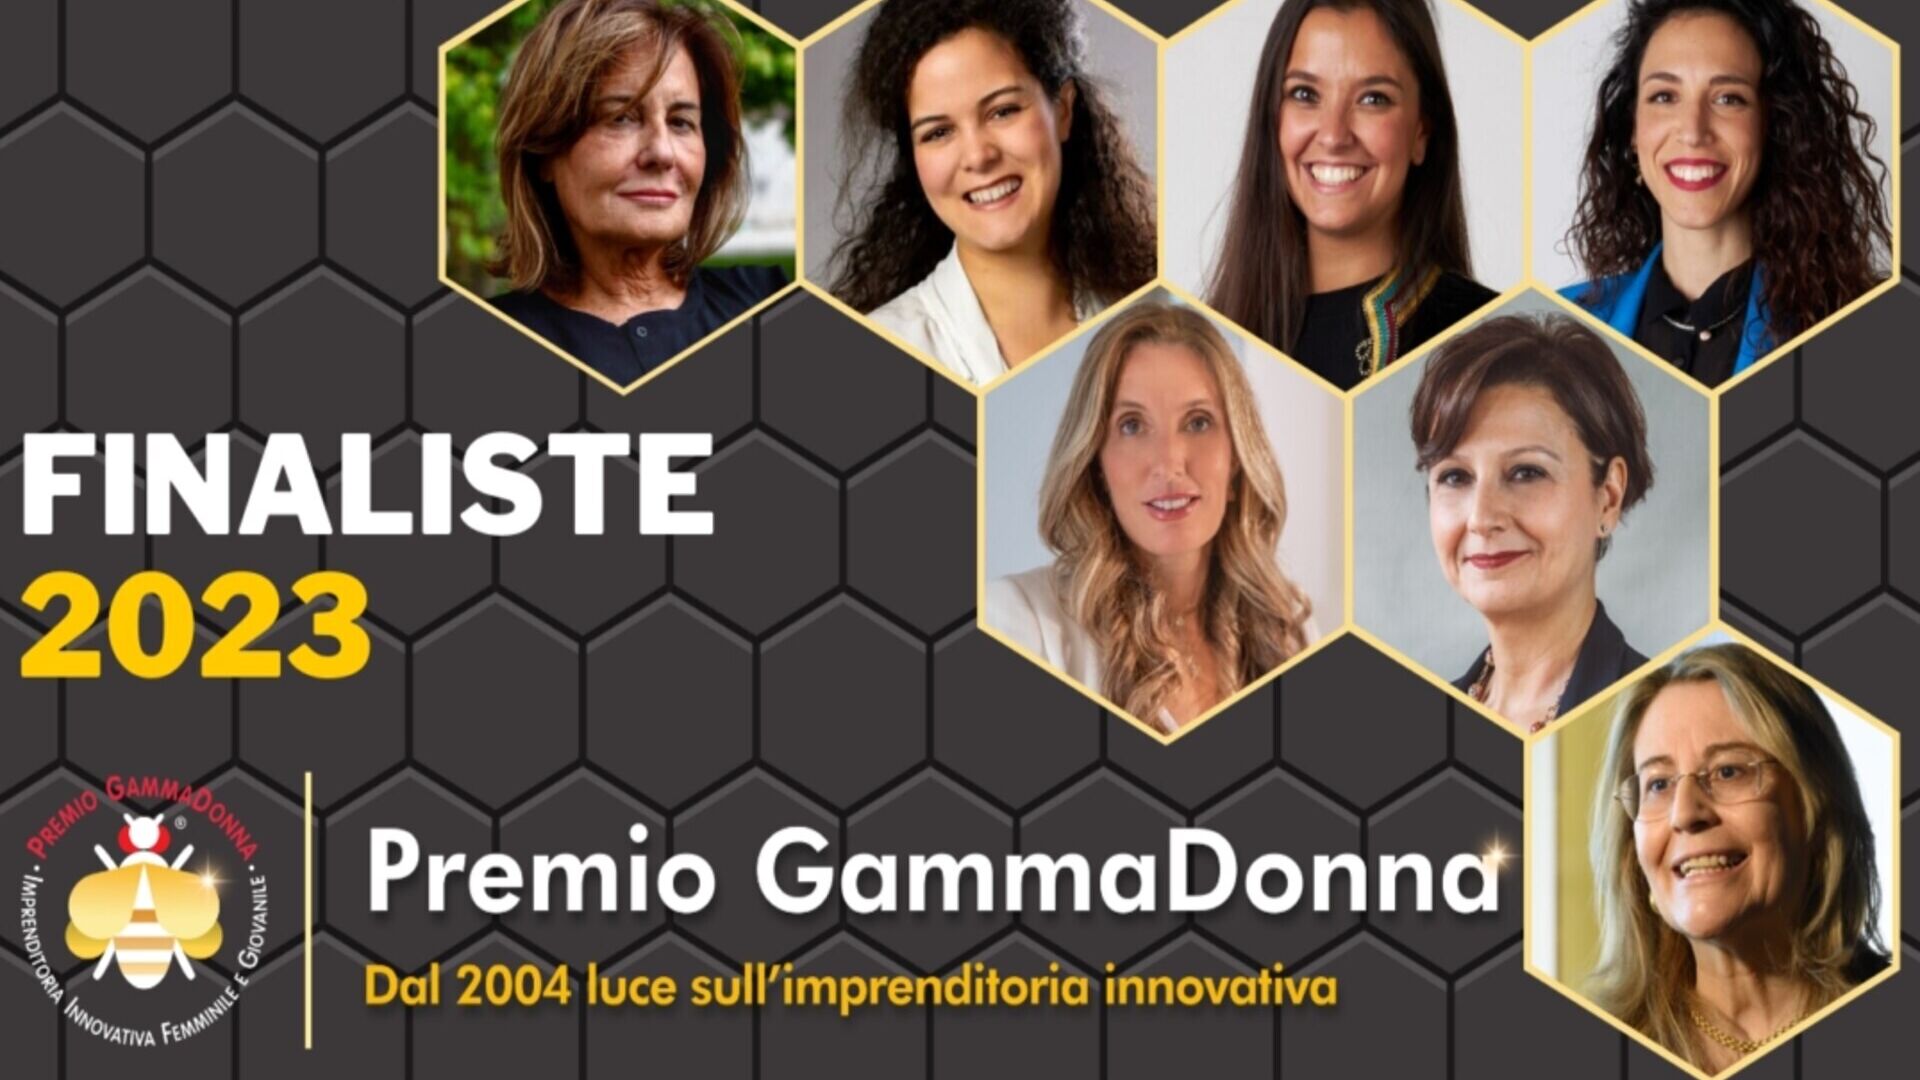 Premio GammaDonna: le sette finaliste dell'edizione 2023